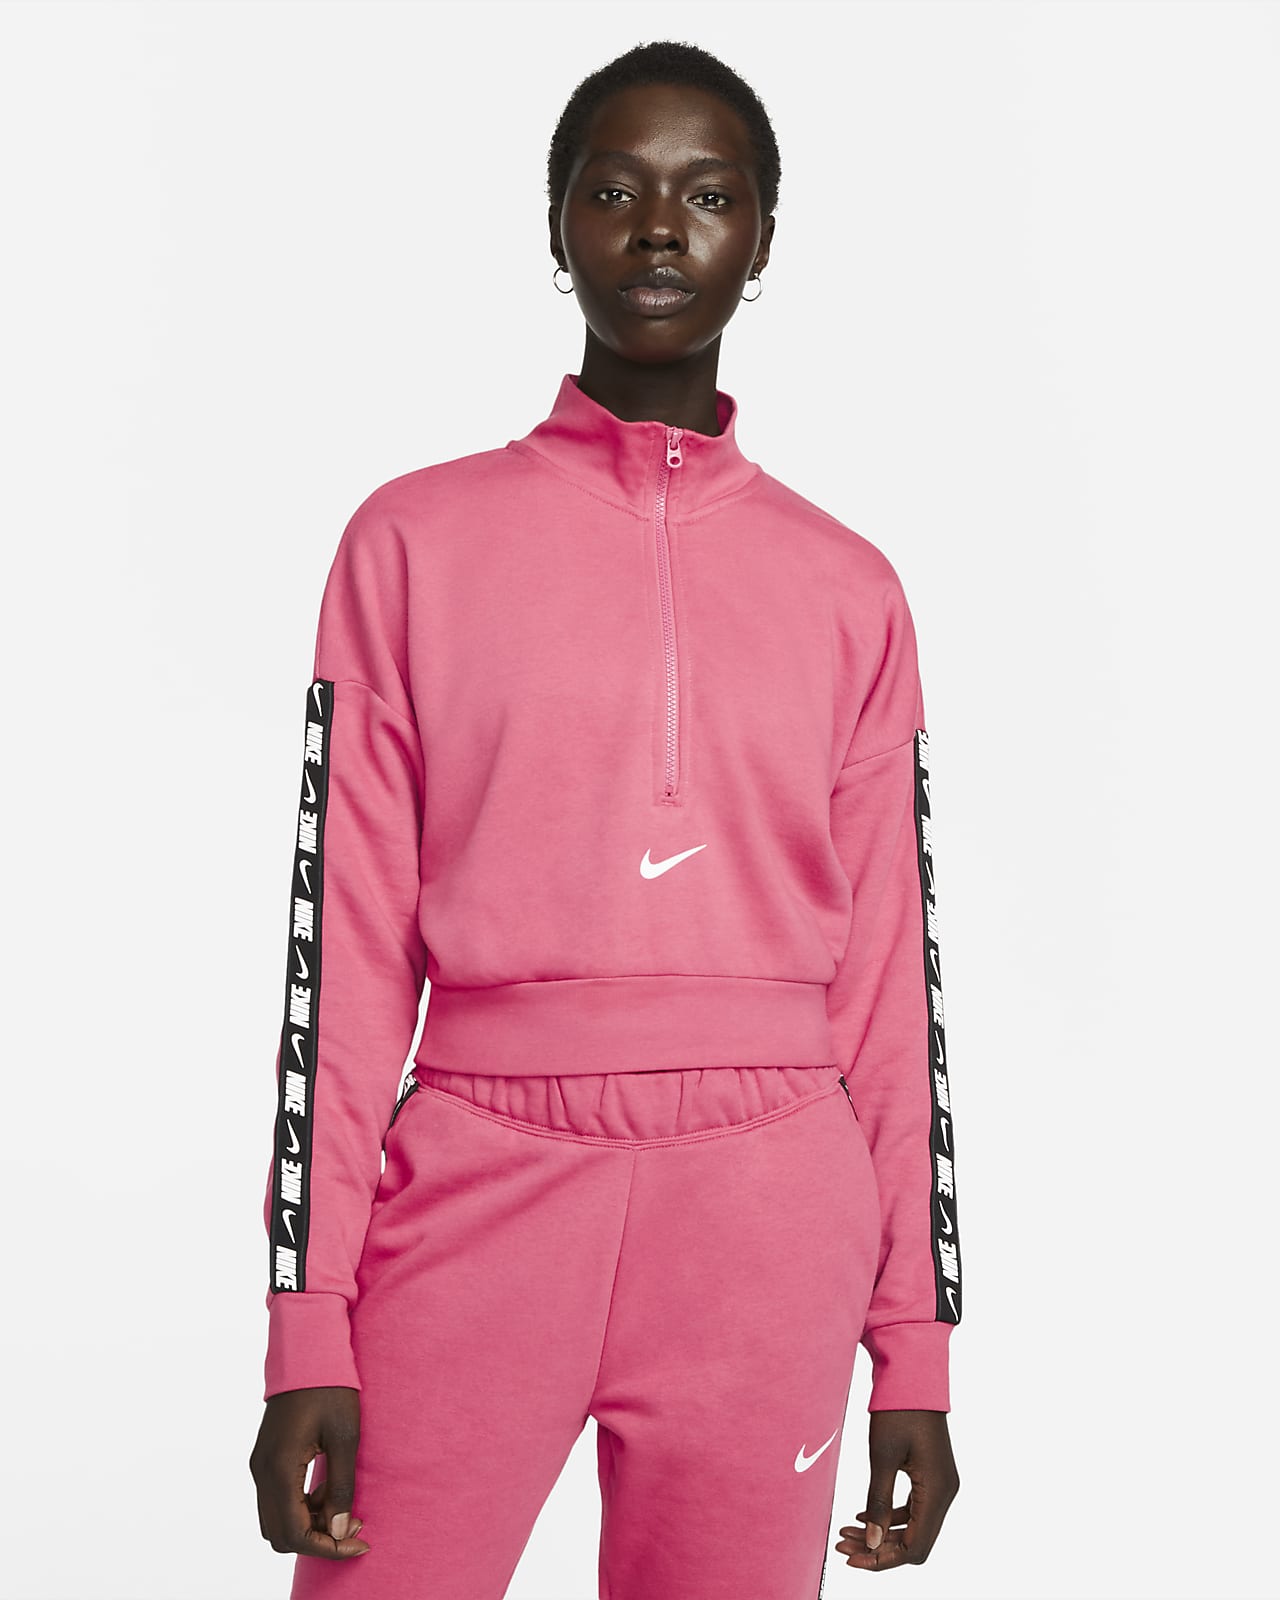 Nike Sportswear Essential Women's Fleece Crop Top